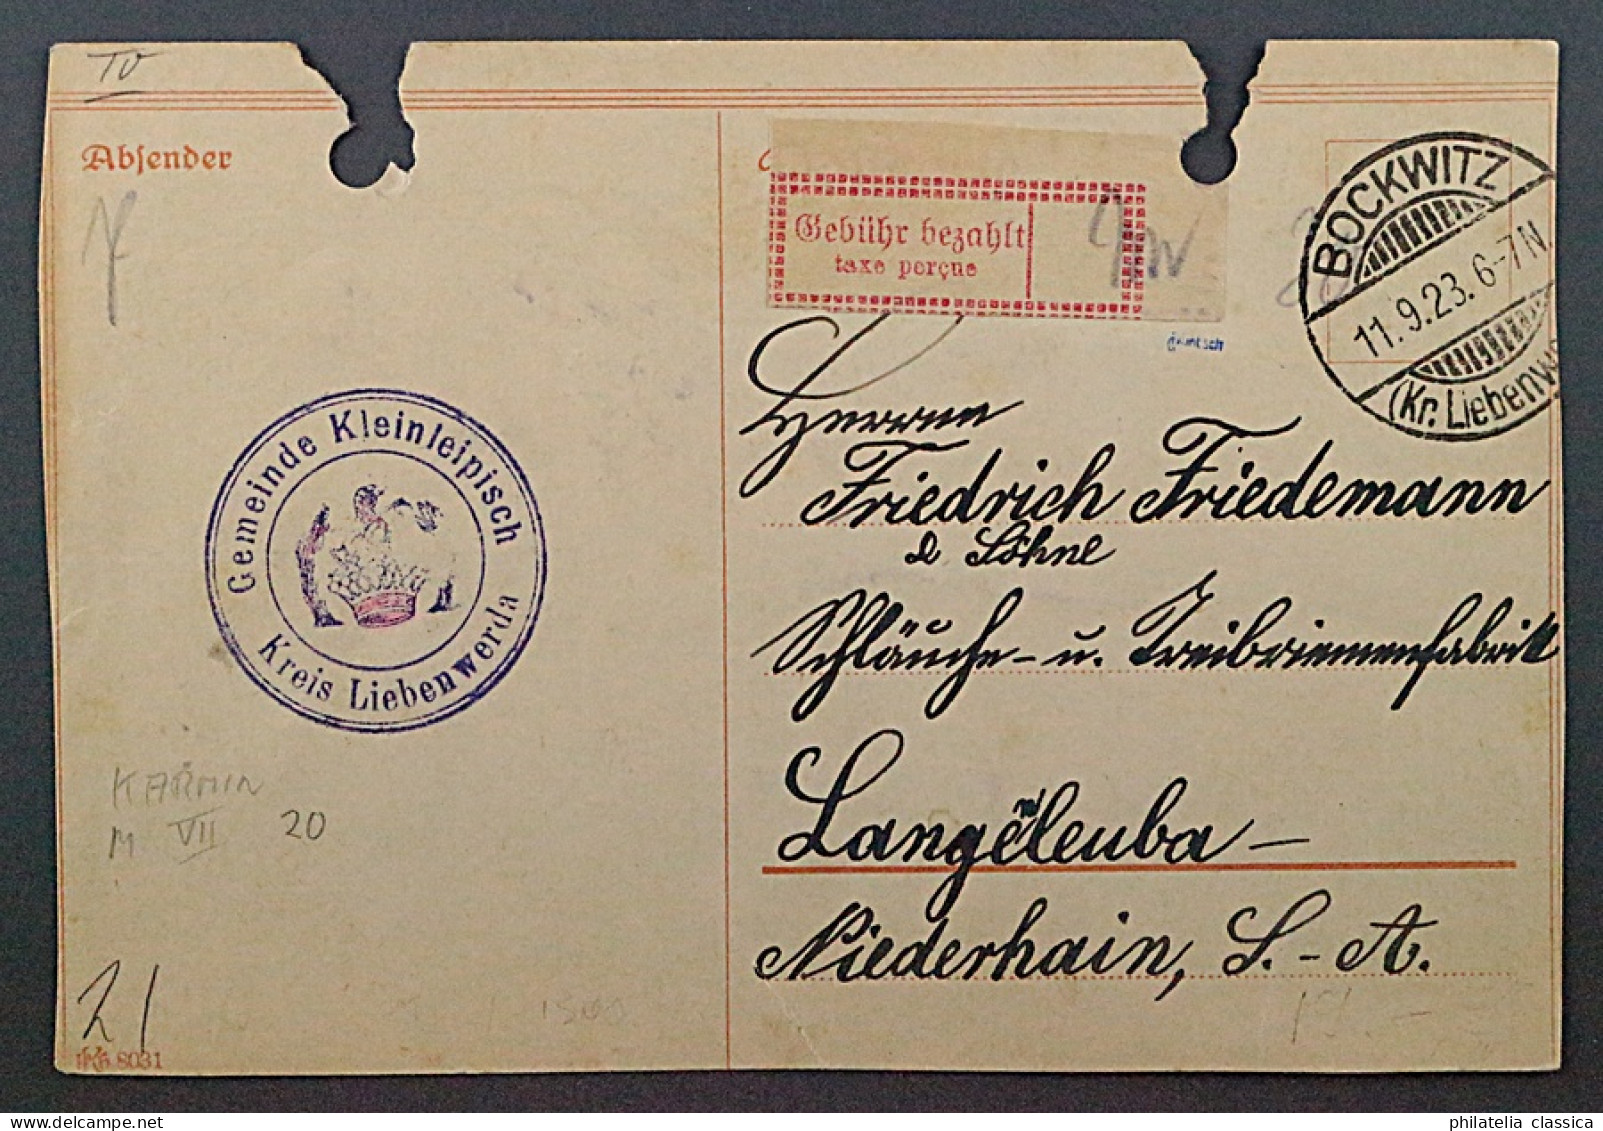 1923, HALLE 1 IIa, Gebührenz. Karmin, Kleine Schrift, Auf Karte,geprüft, 1800,-€ - 1922-1923 Lokalausgaben